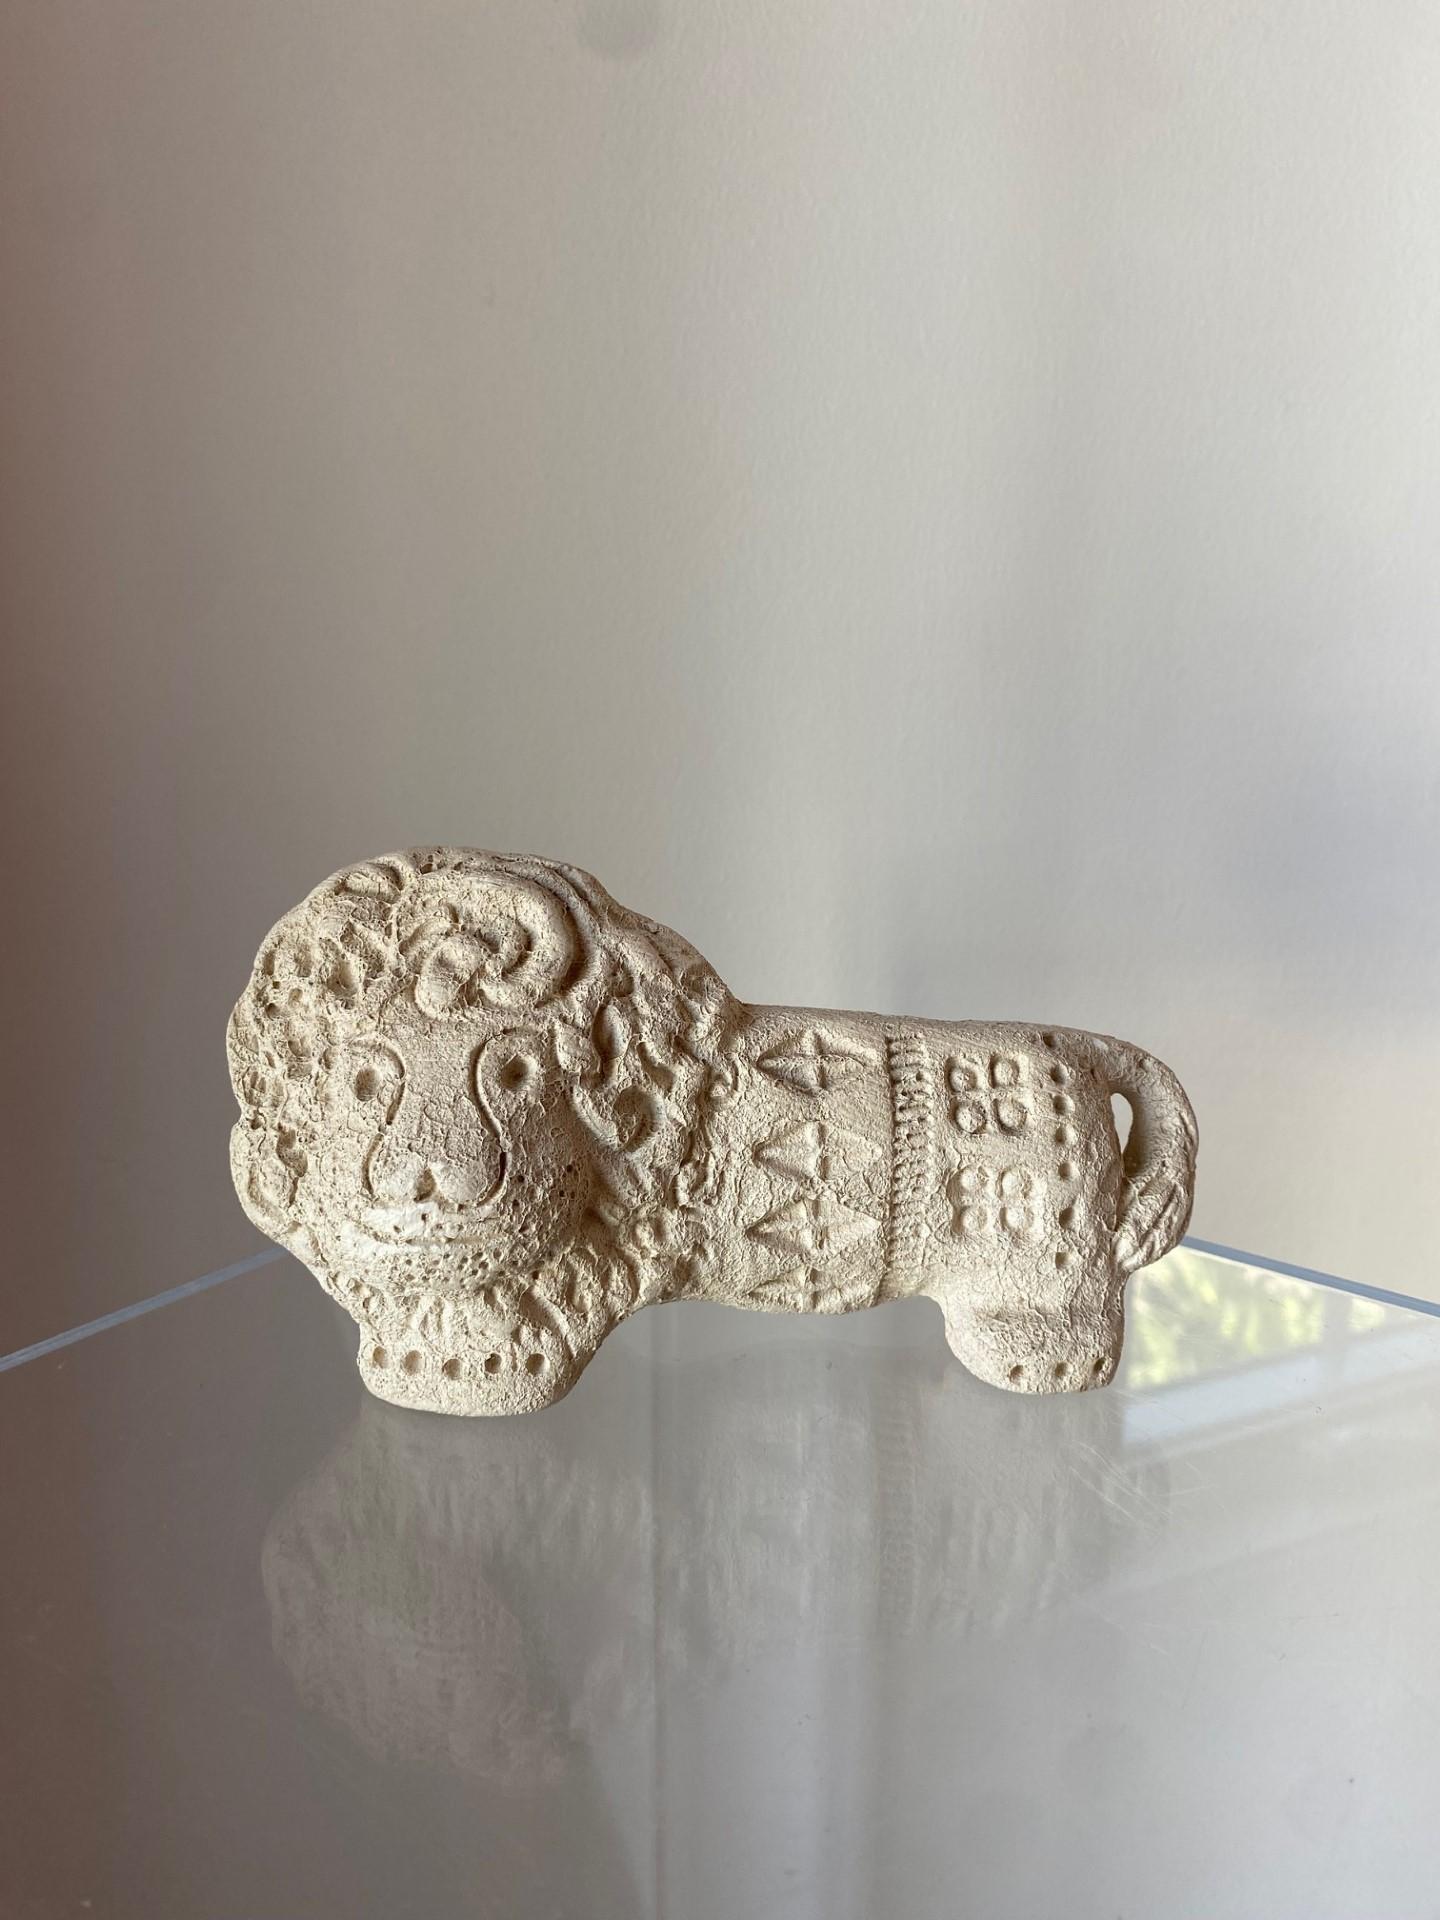 Ce lion vintage en céramique de Flavia Montelupo est un bel ajout à toute collection. Fabriquée en Italie par Aldo Londi (Bitossi), cette figure non émaillée présente les détails complexes d'un lion enjoué. Le matériau céramique ajoute une touche